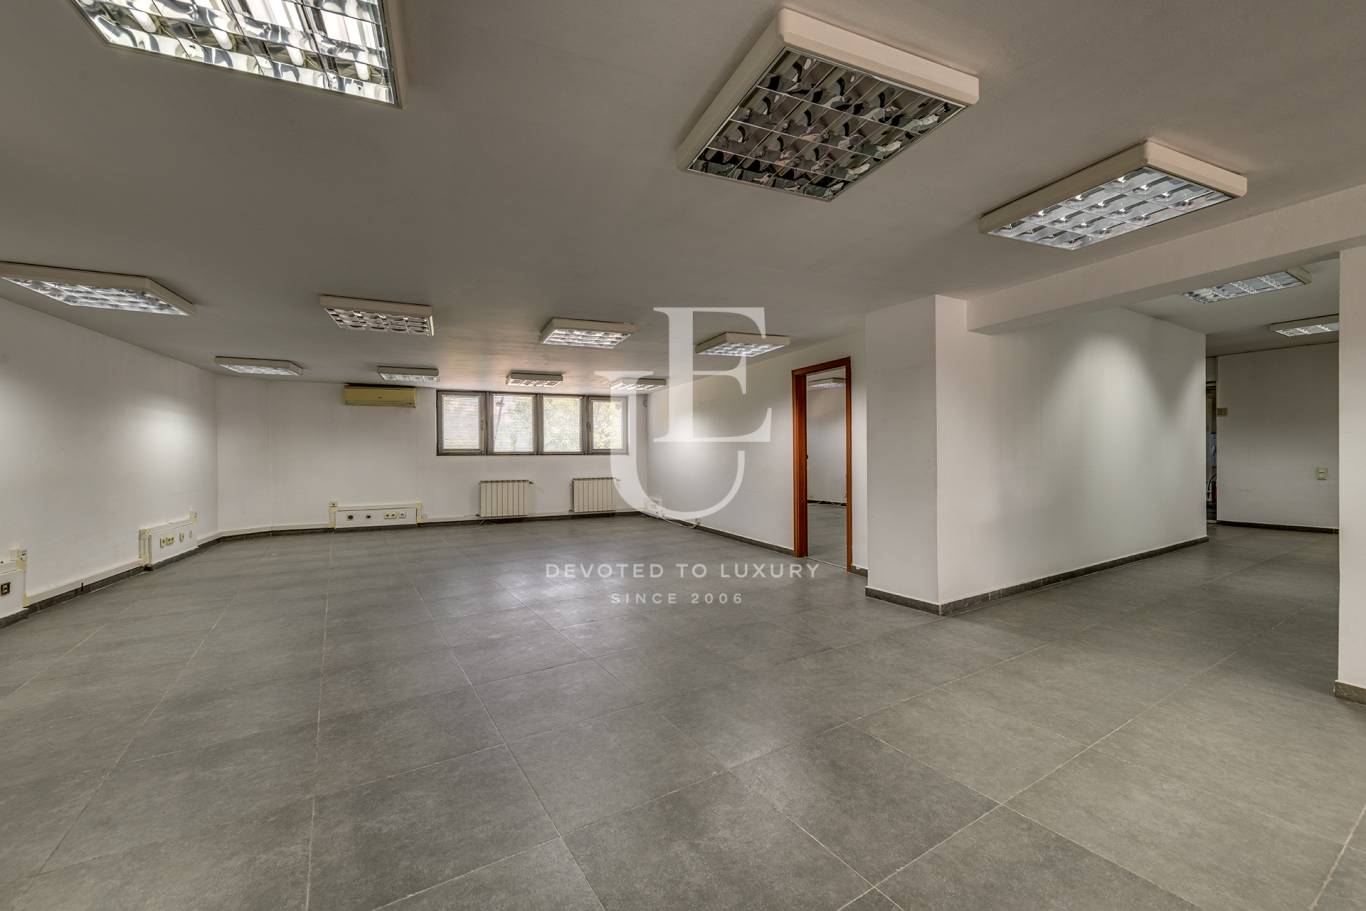 Офис под наем в София, Манастирски ливади - изток - код на имота: K20583 - image 3